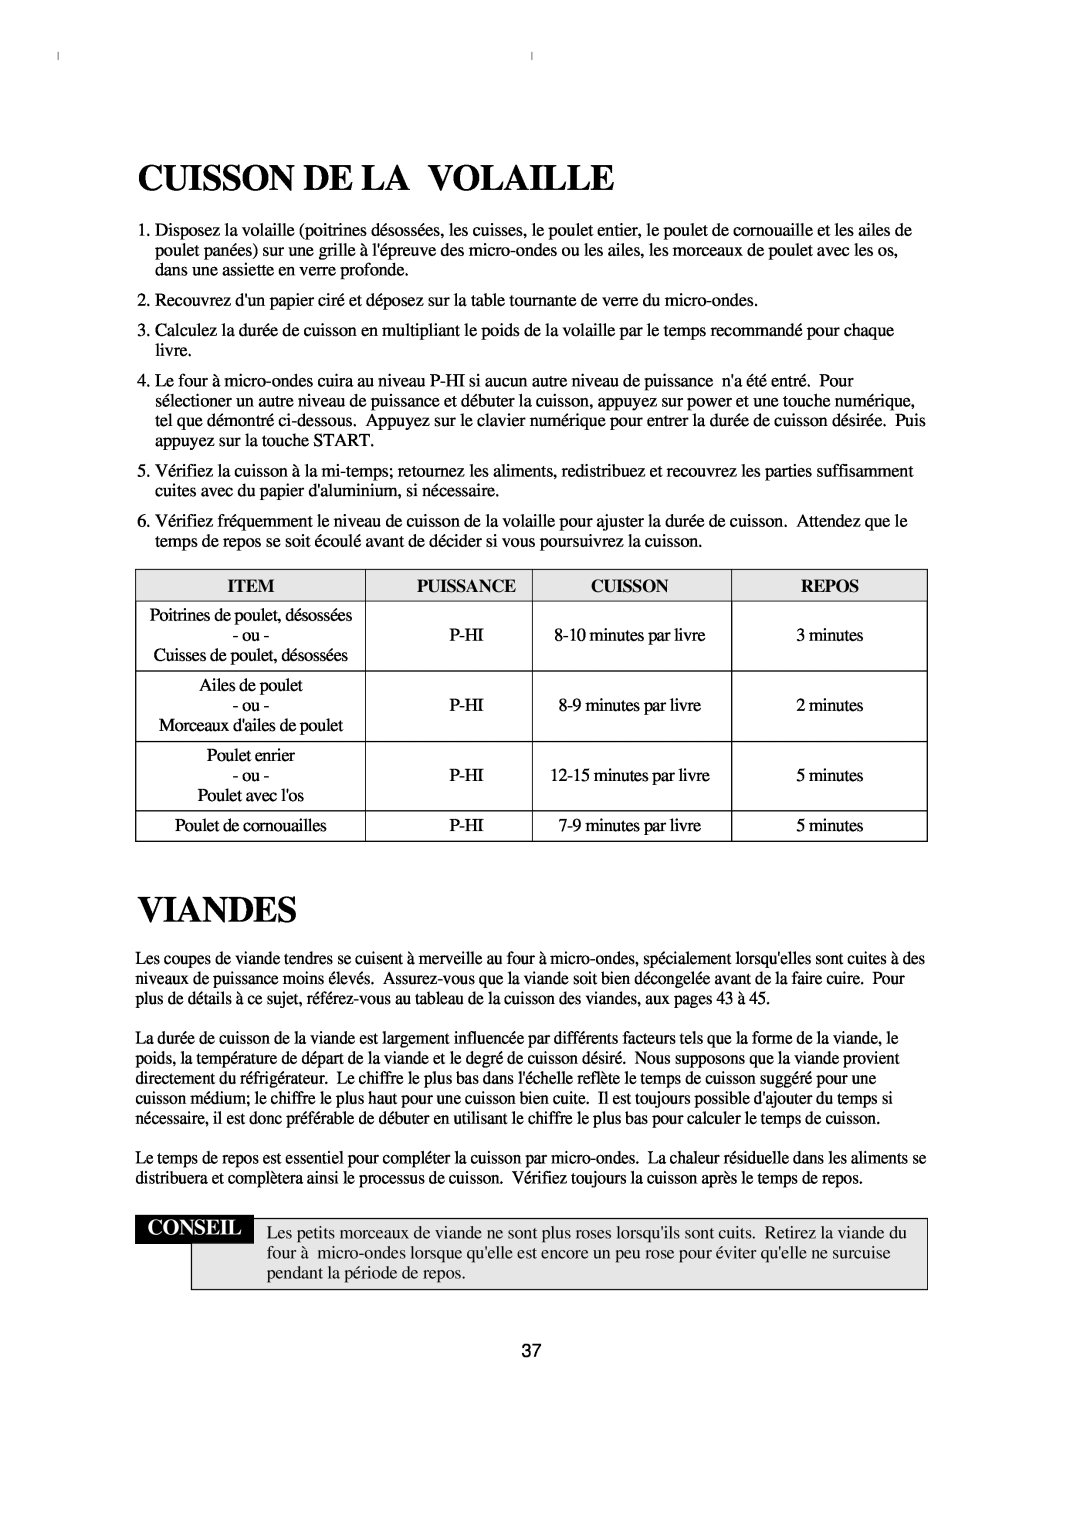 Emerson MW8993WC/BC owner manual Cuisson De La Volaille, Viandes, Conseil, Puissance, Repos 